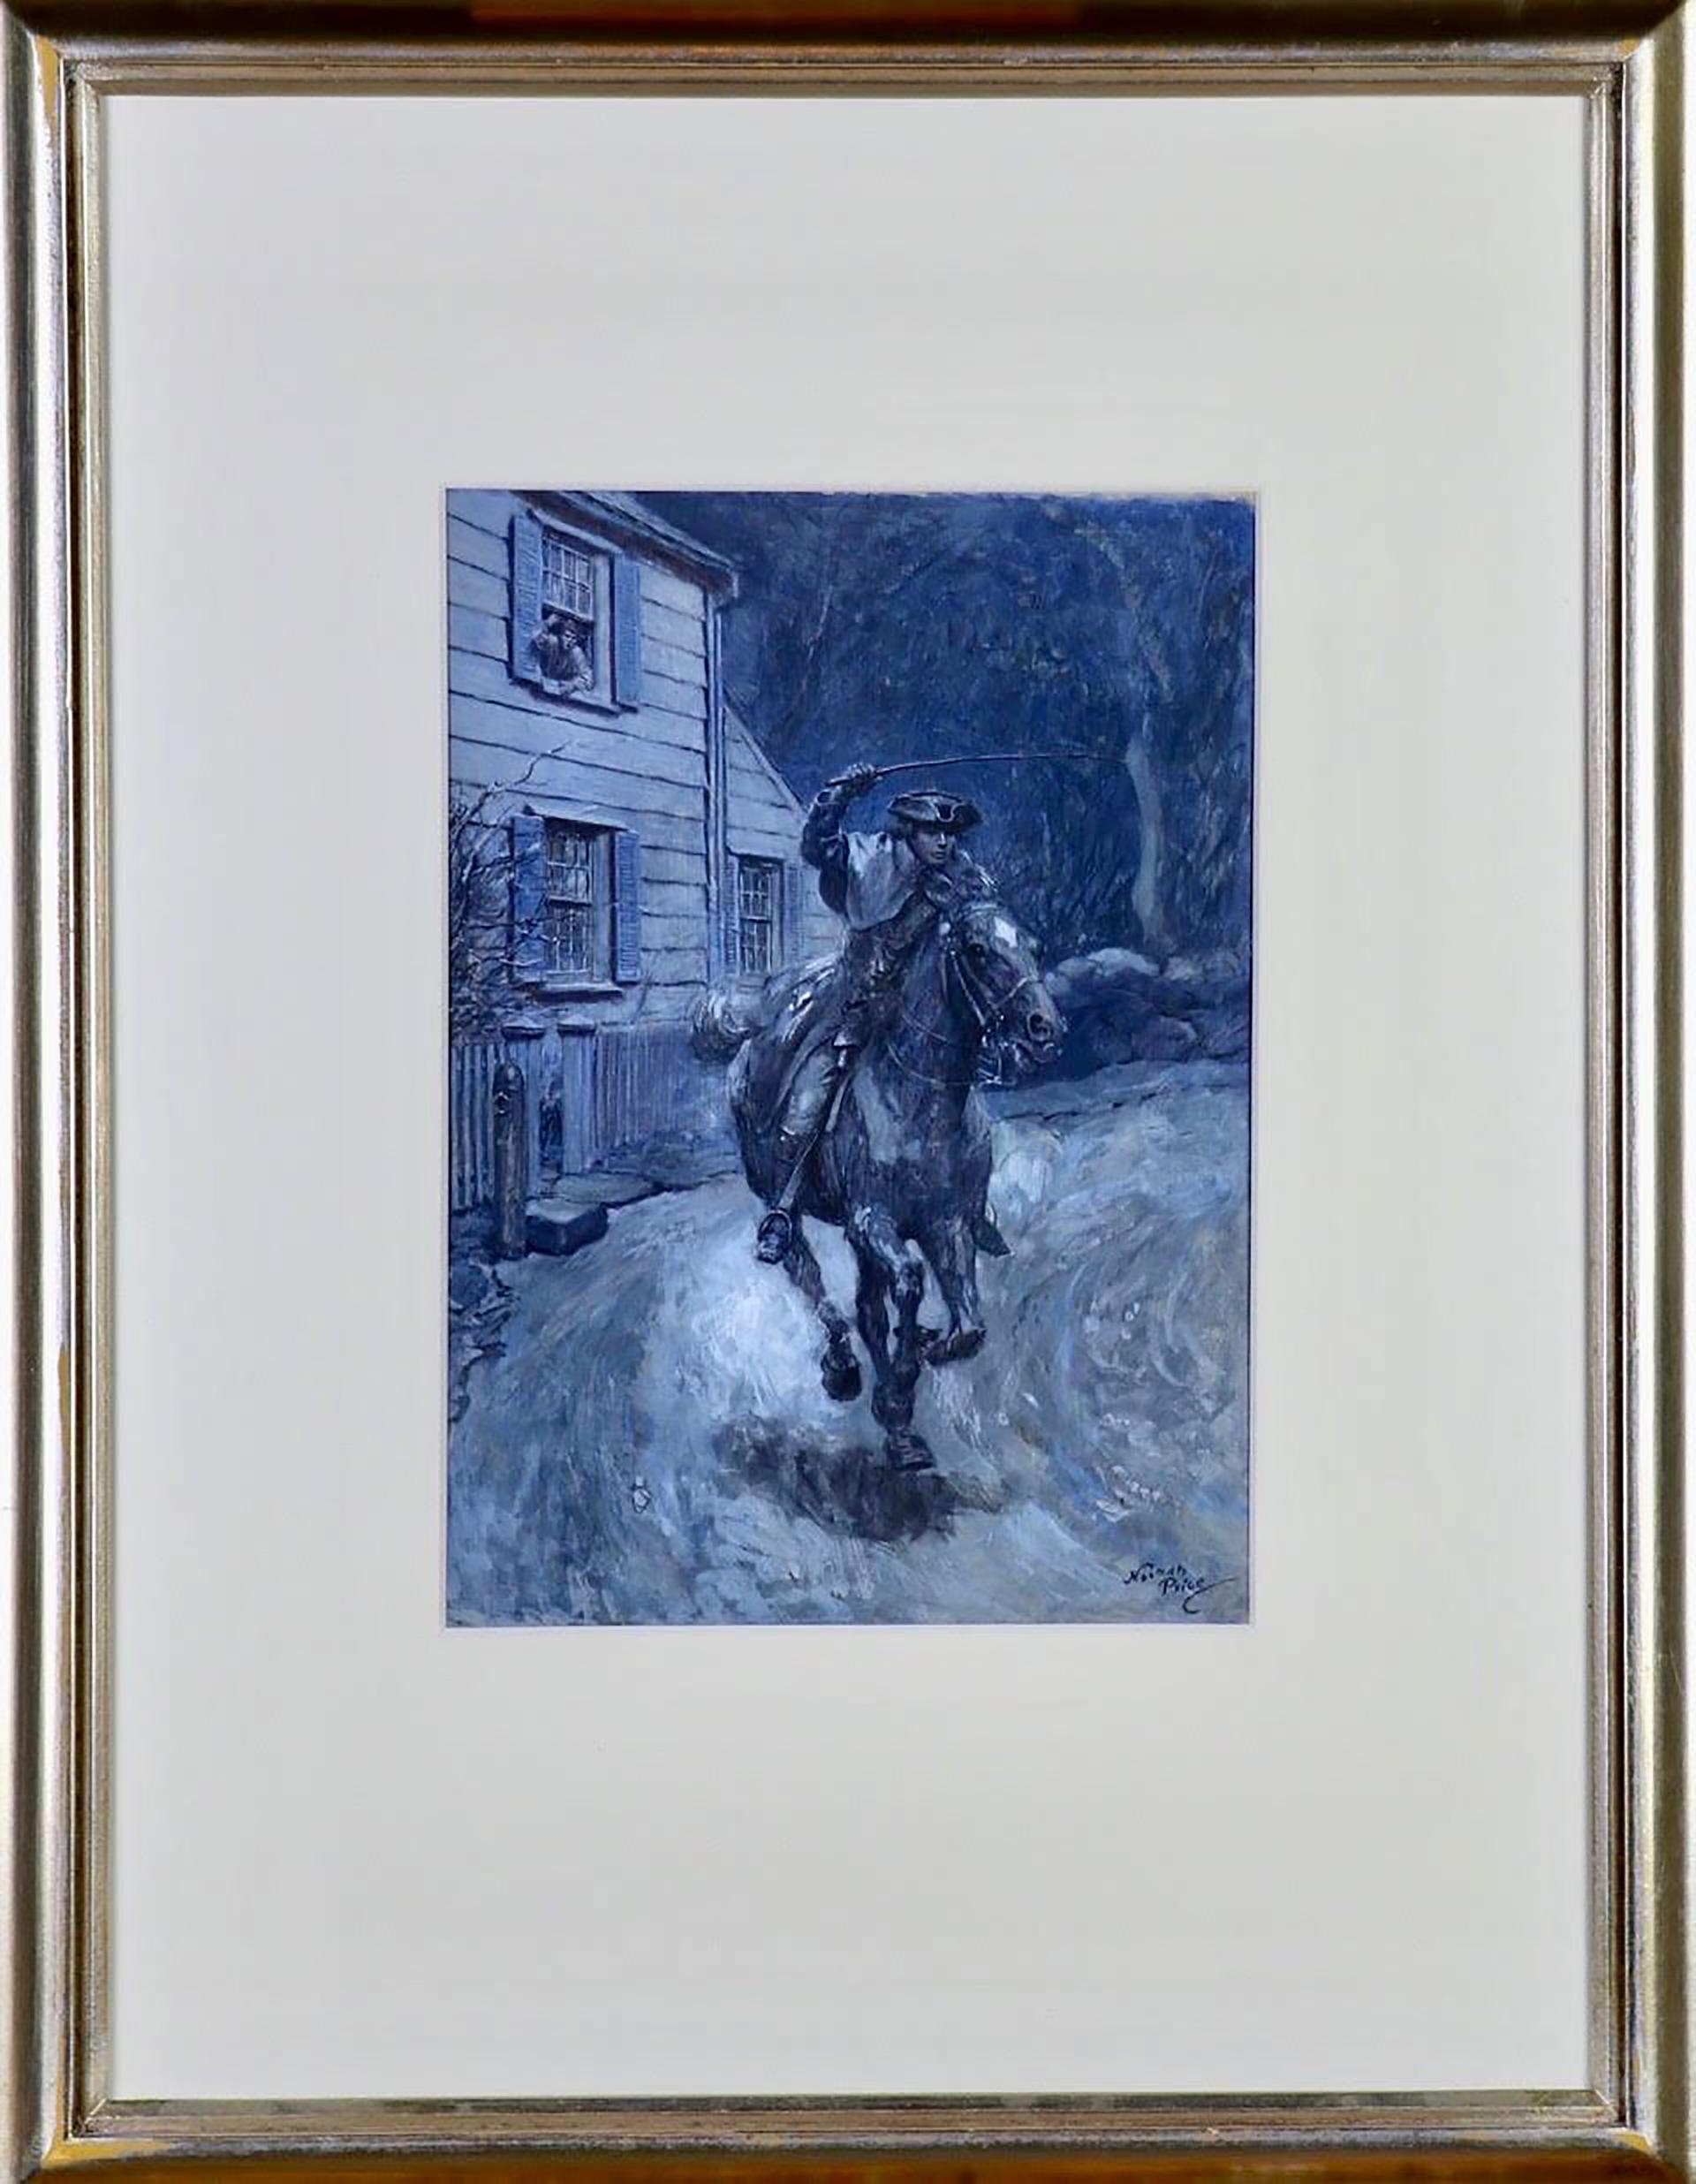 Paul Revere zu Pferd reiten – Painting von Norman Price